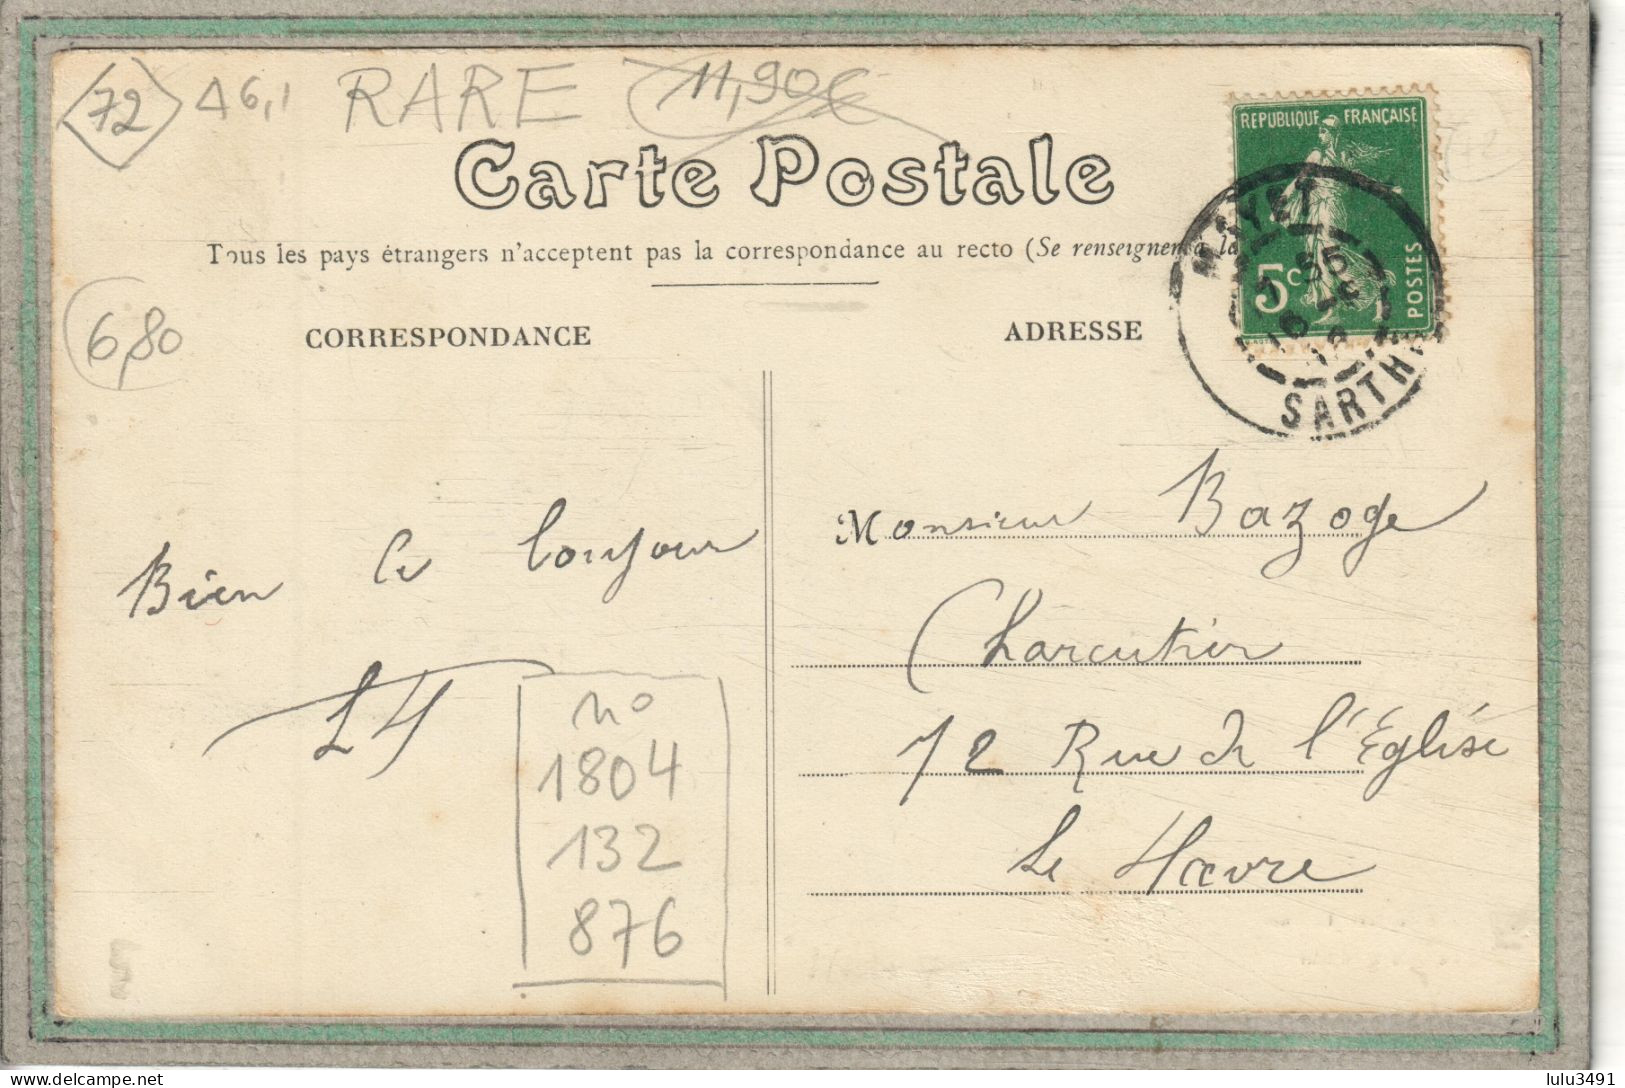 CPA (72) MAYET - Aspect Du Café De La Gare à L'entrée De La Ville En 1912 - Mayet